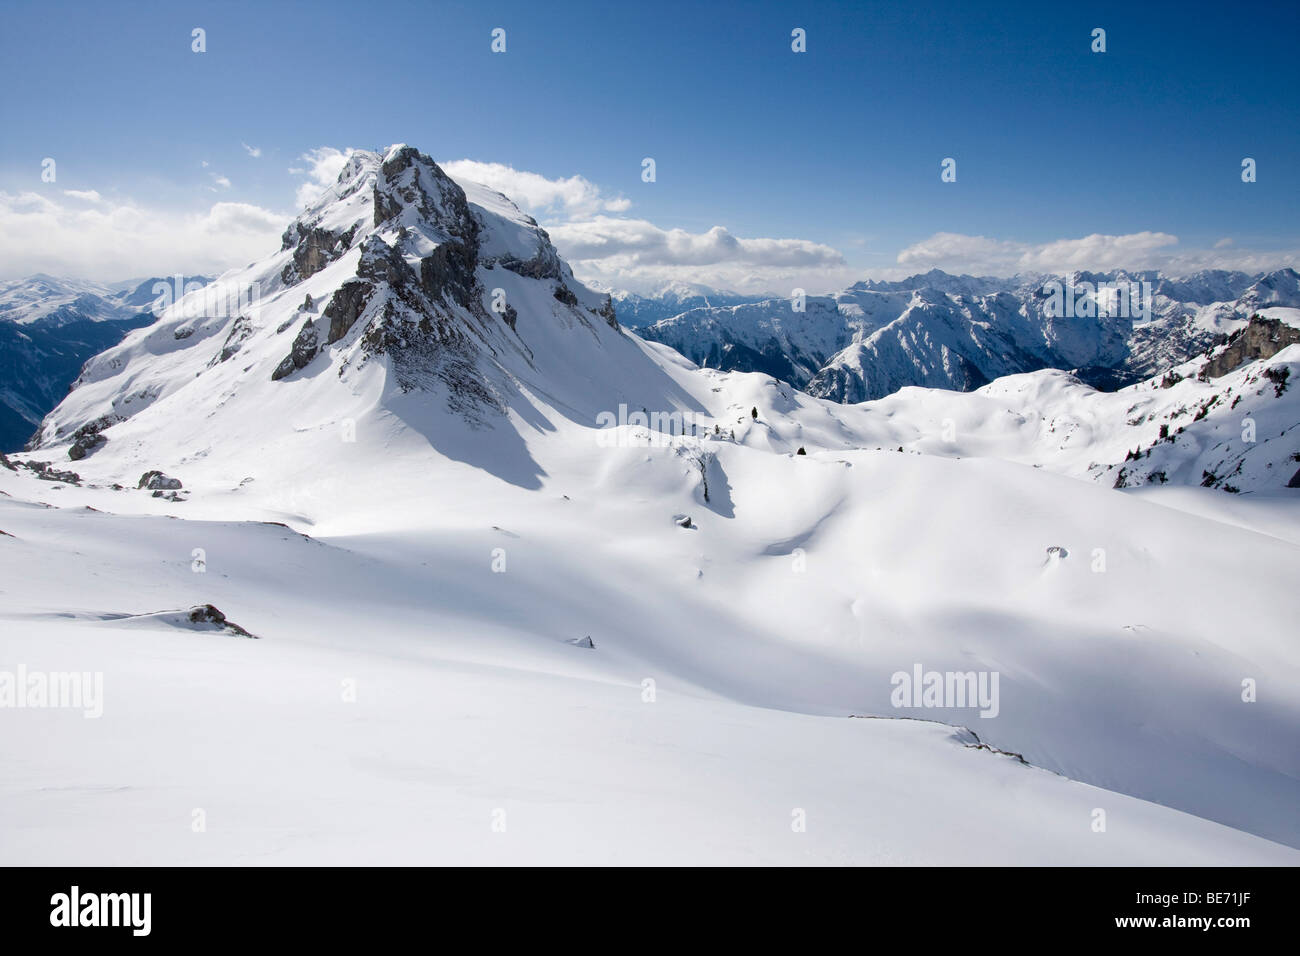 Baguette magique Haidachstell dans la montagne en hiver Rofan, Tyrol, Autriche, Europe Banque D'Images